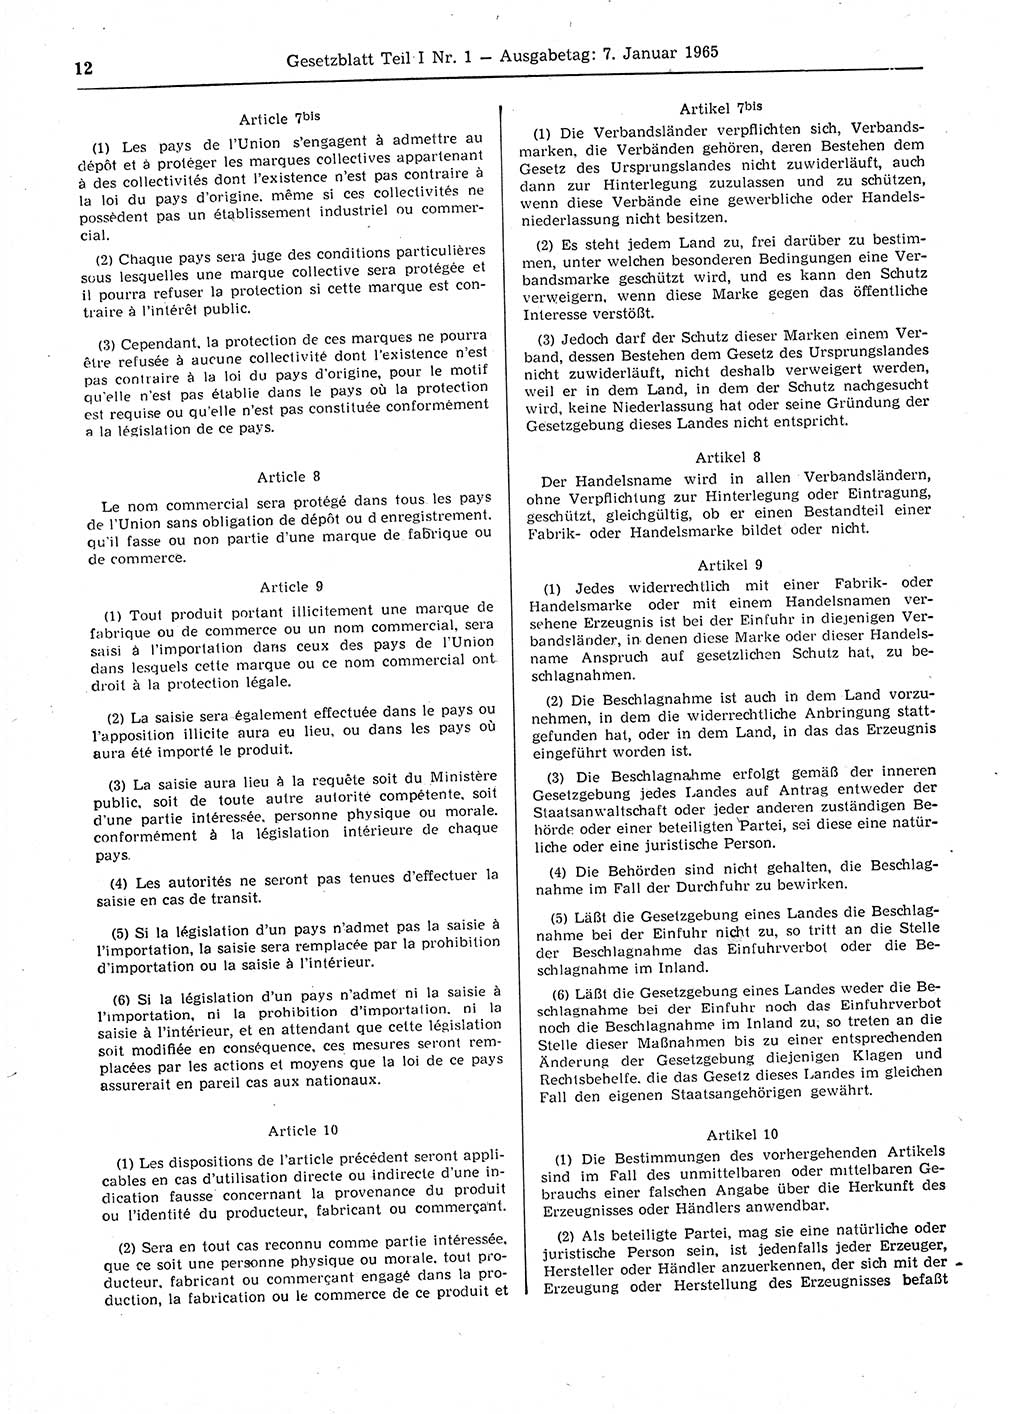 Gesetzblatt (GBl.) der Deutschen Demokratischen Republik (DDR) Teil Ⅰ 1965, Seite 12 (GBl. DDR Ⅰ 1965, S. 12)